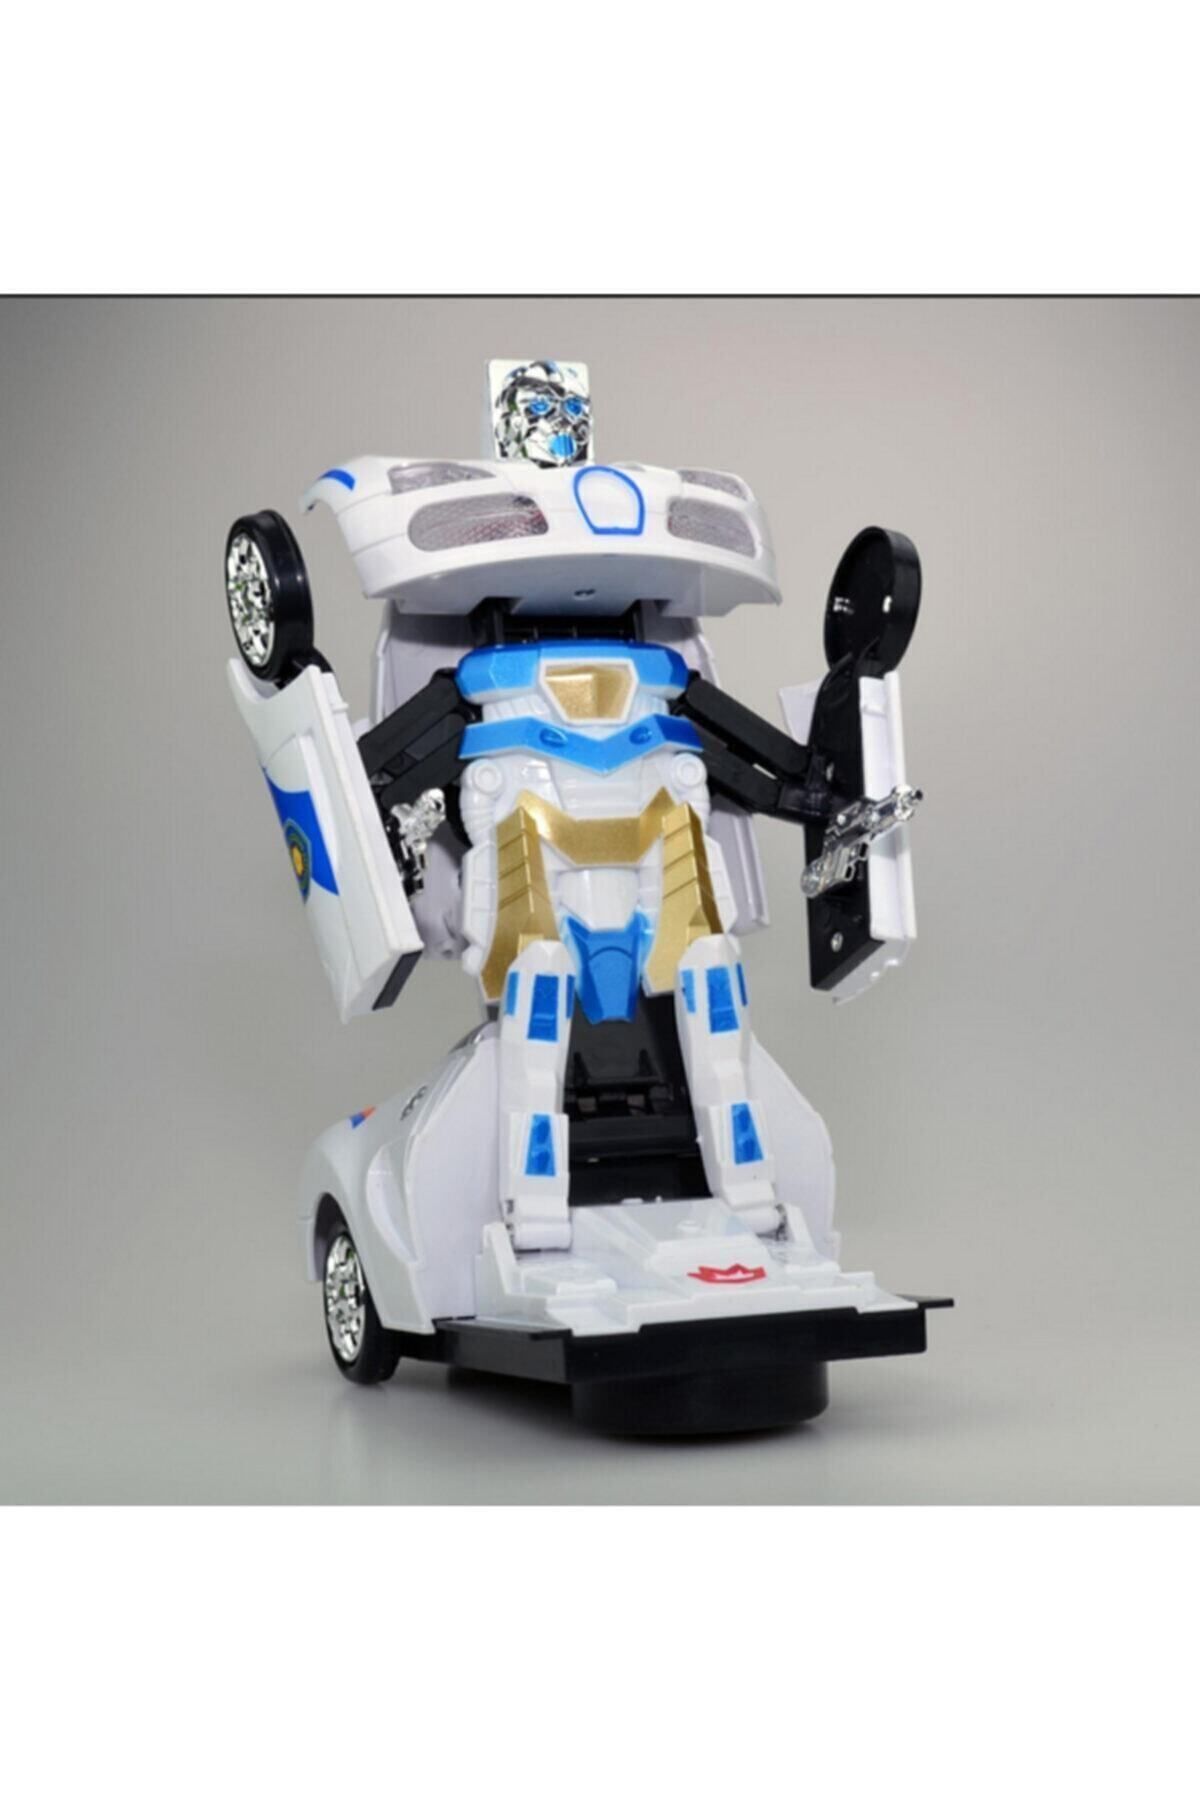 Brother Toys Transformers Robota Dönüşen Işıklı, Sesli, Sensörlü Oyuncak Polis Arabası Ferrari Model